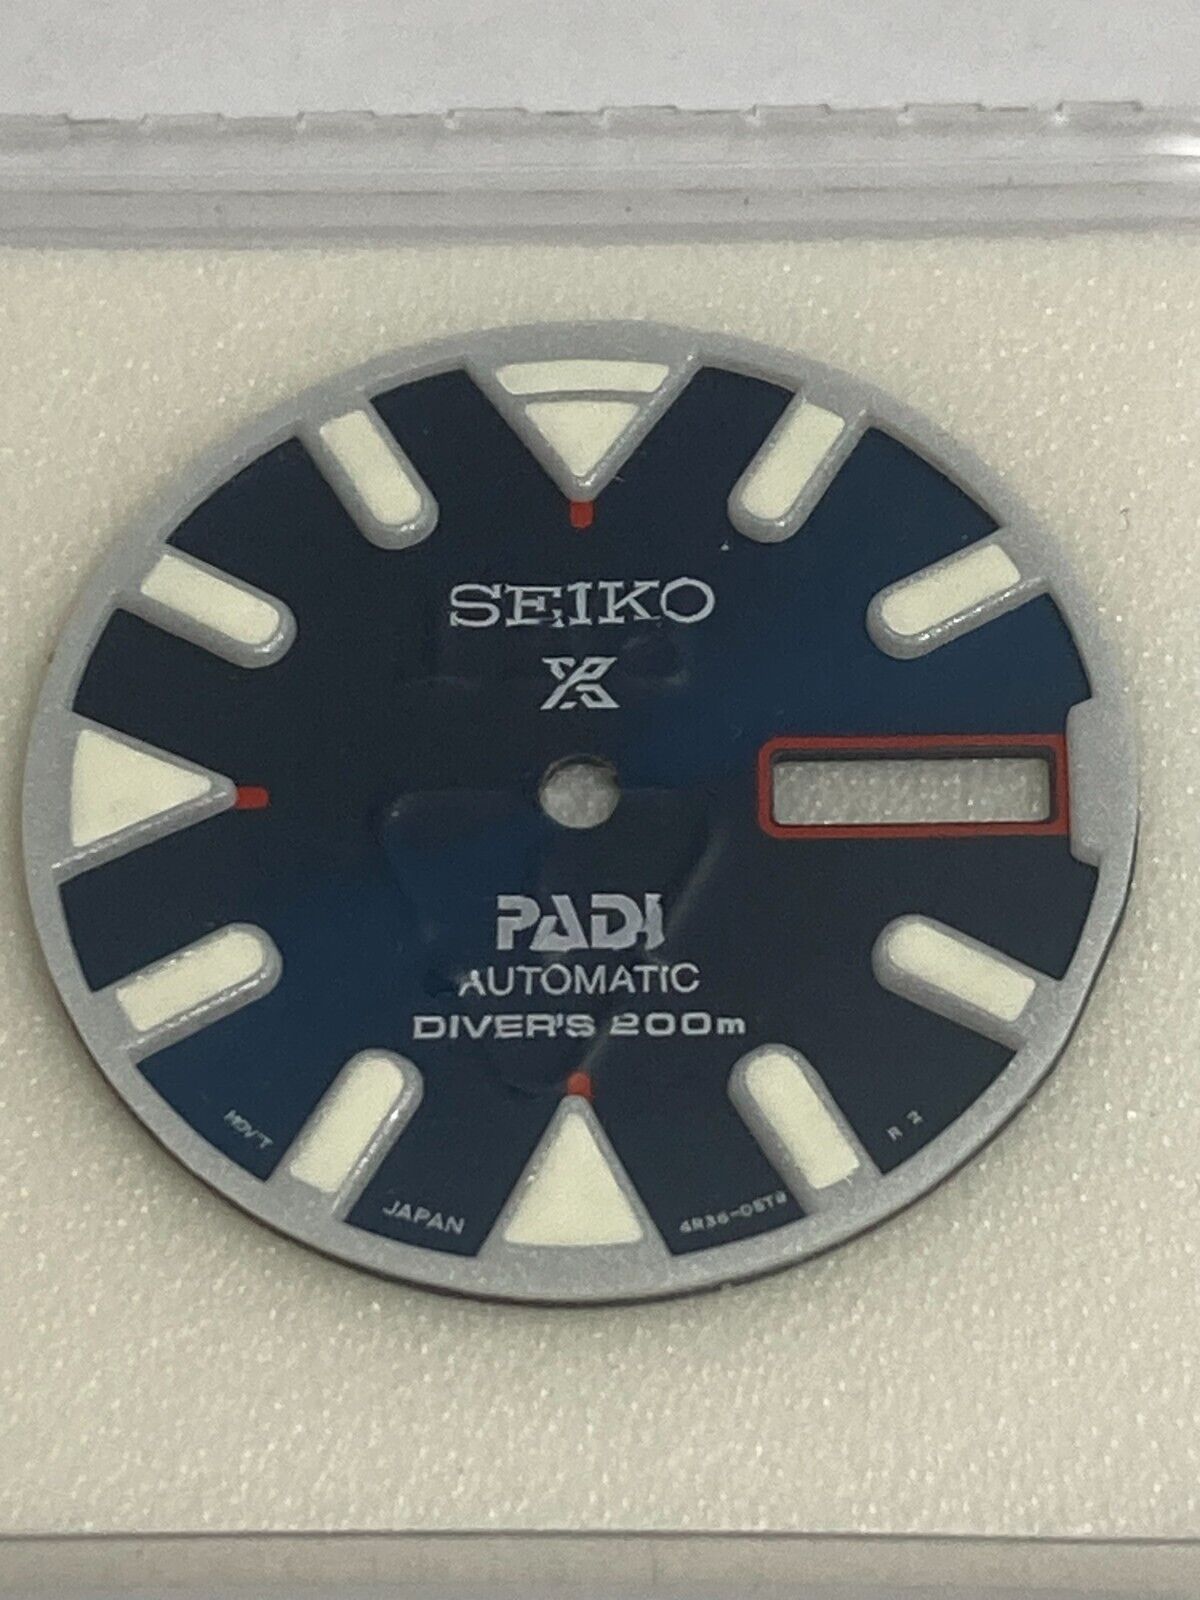 Seiko SRPA83 dial